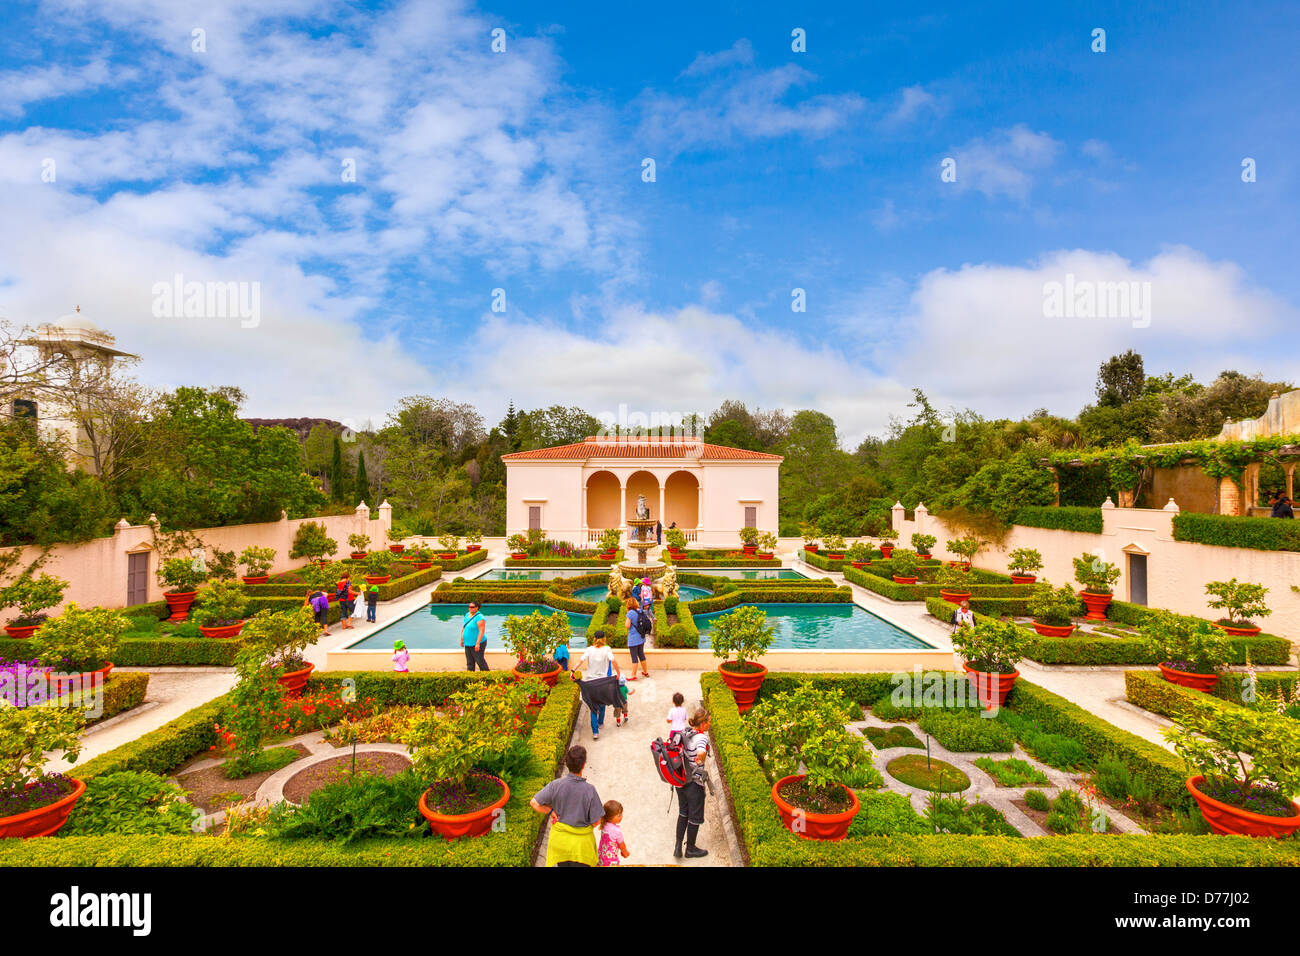 Italian Renaissance Garden, Hamilton Gardens, Hamilton, Waikato, New Zealand. Stock Photo